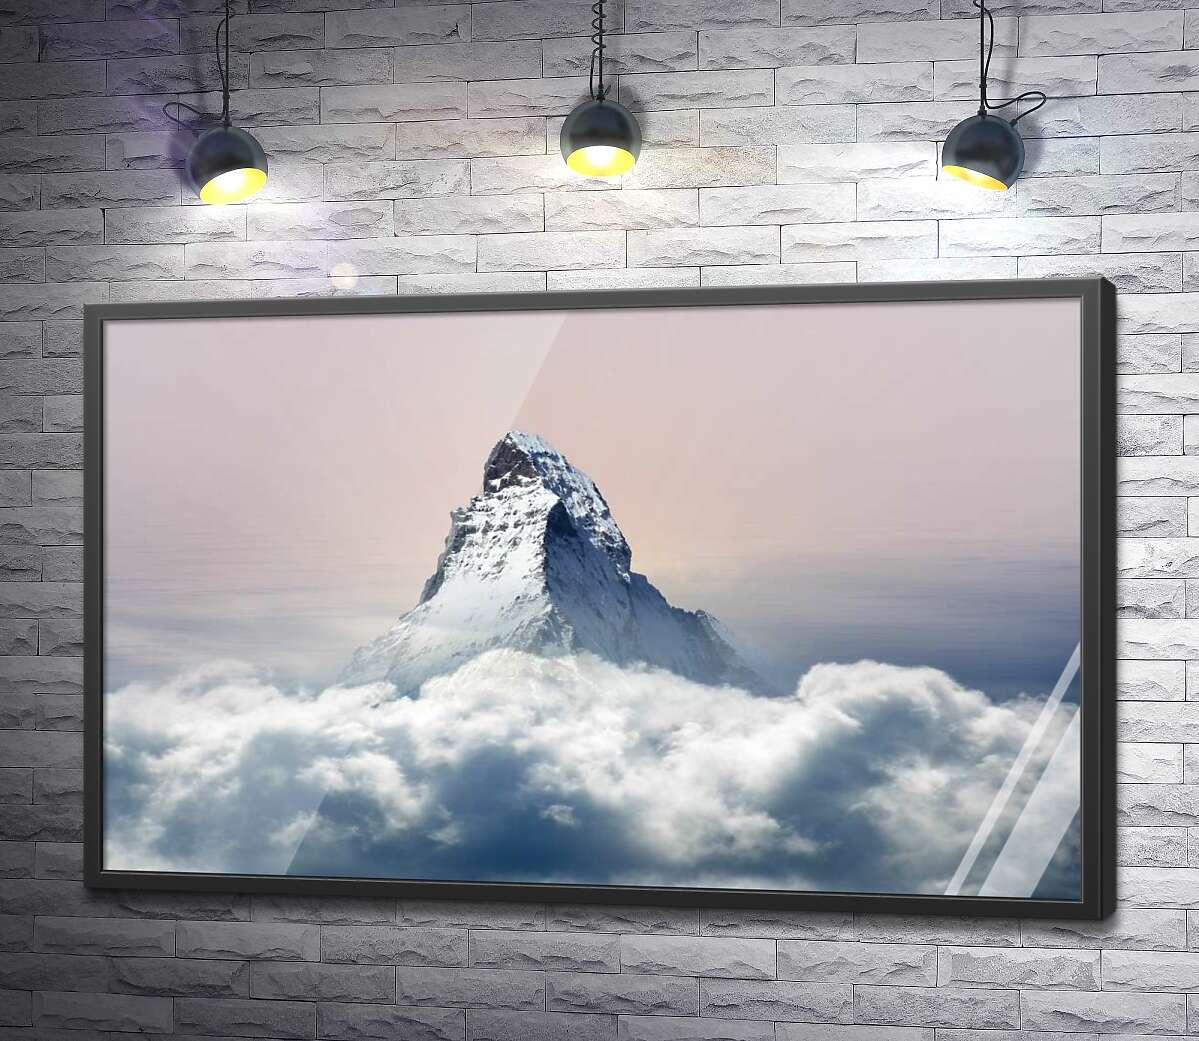 постер Скалистый пик горы Маттерхорн (Matterhorn) окружен пушистым слоем облаков